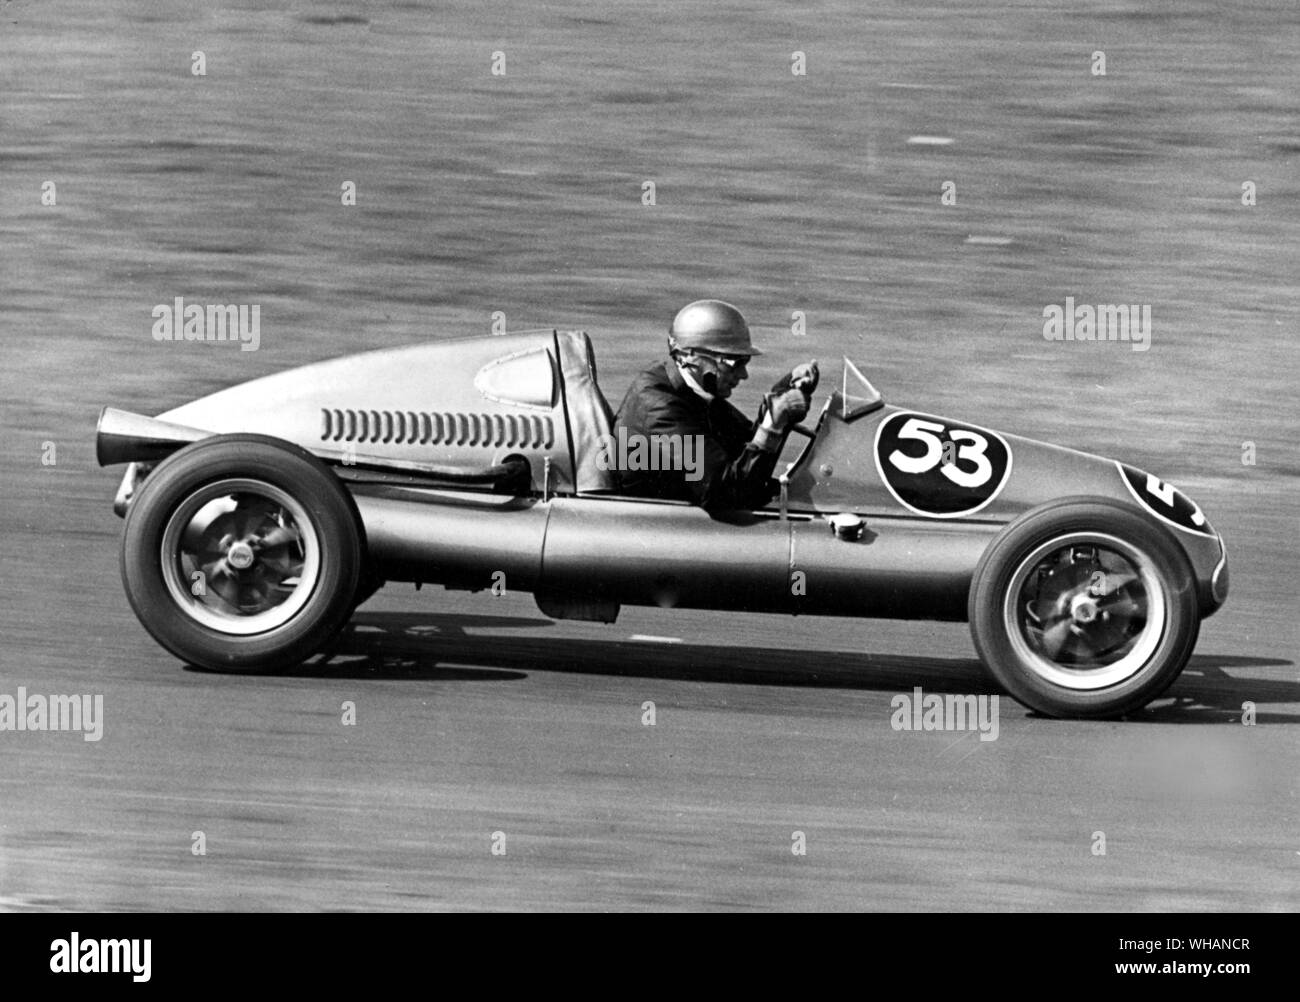 V. Chr. Ecclestone fährt sein Cooper53 in Brands Hatch 1951. Er gewann die 500cc-Rennen. Stockfoto